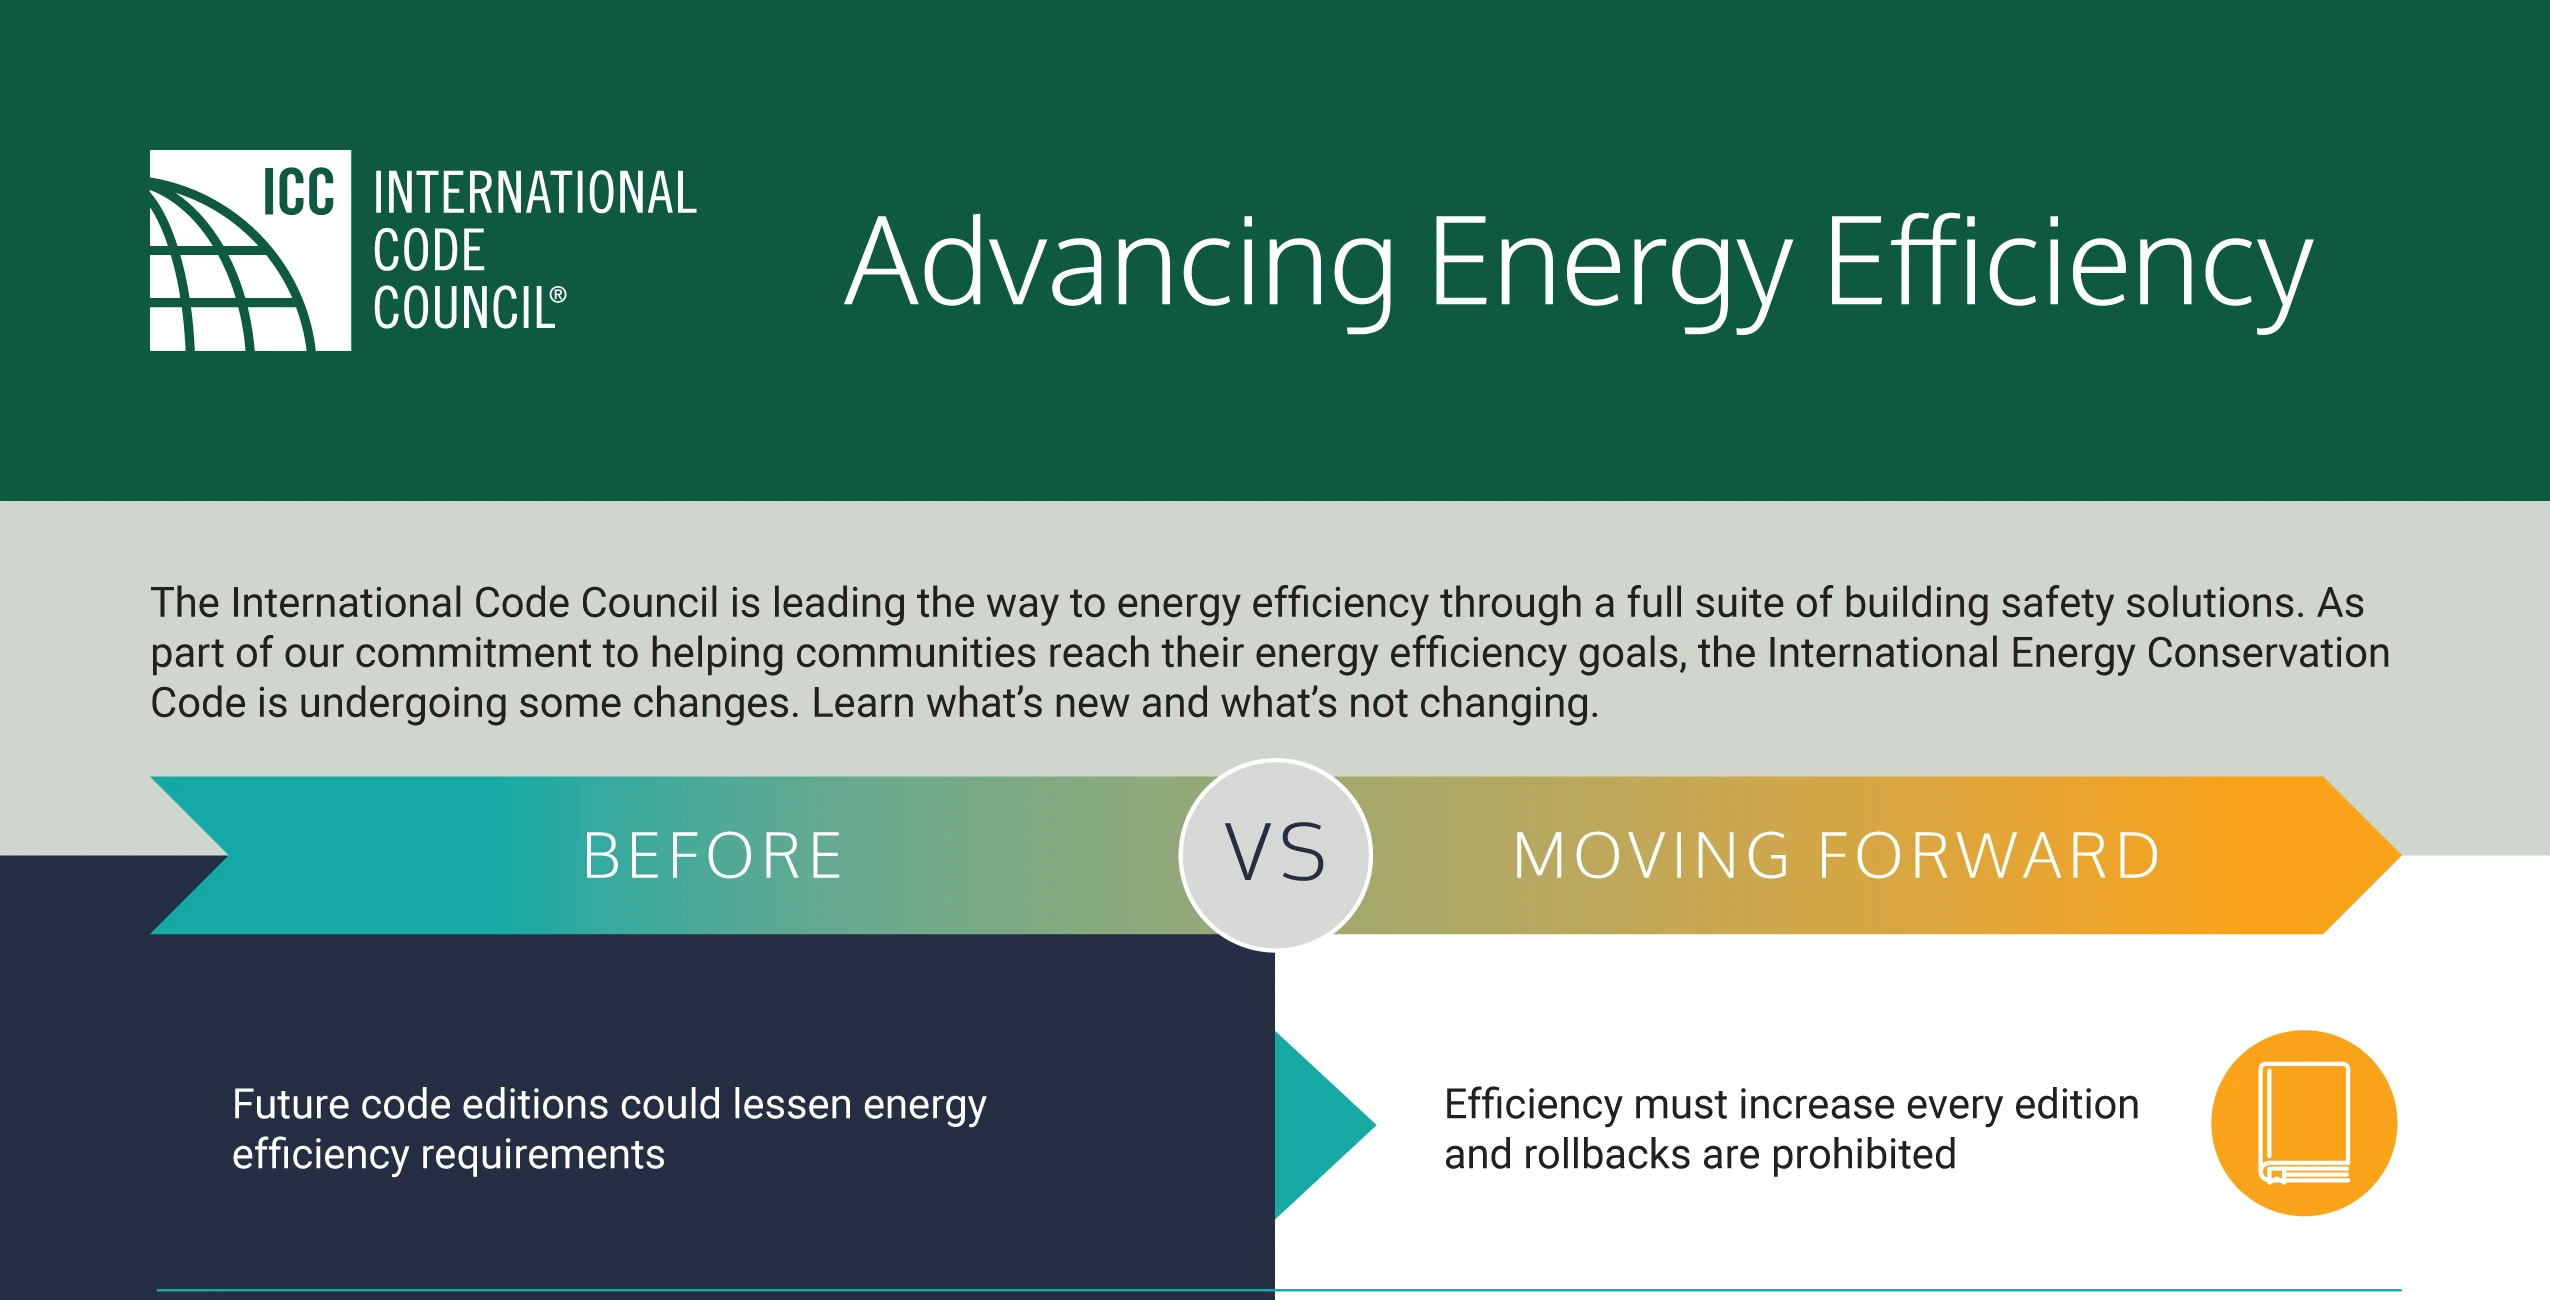 ICC Advancing Energy Efficiency (as of 03-21)